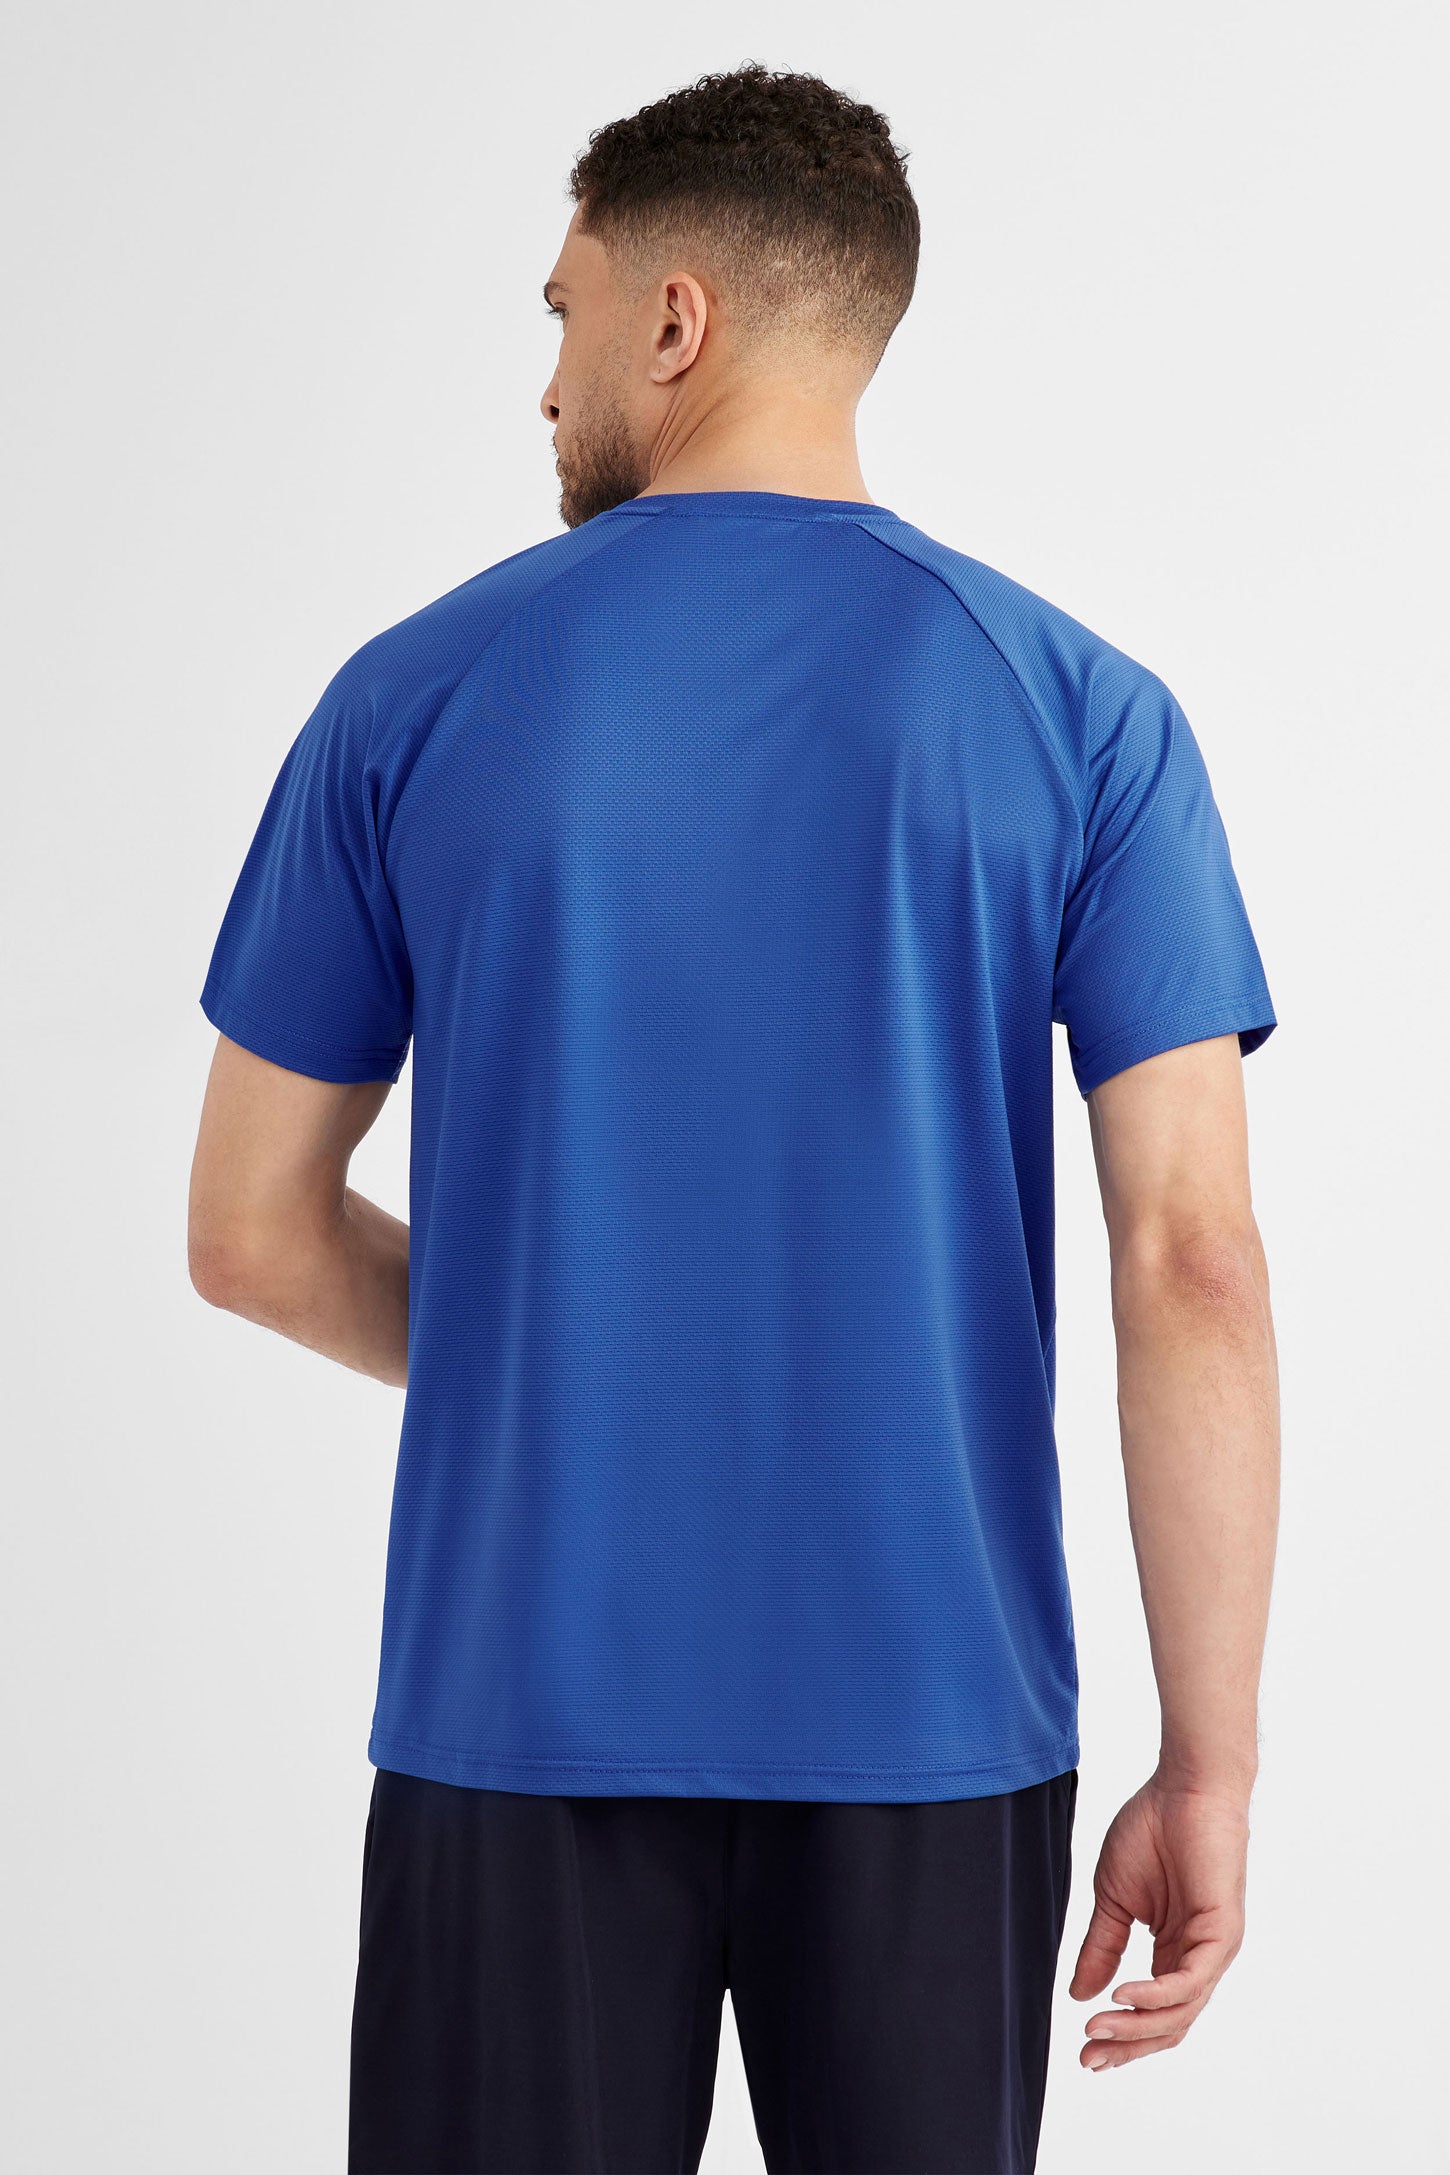 T-shirt athlétique - Homme && BLEU